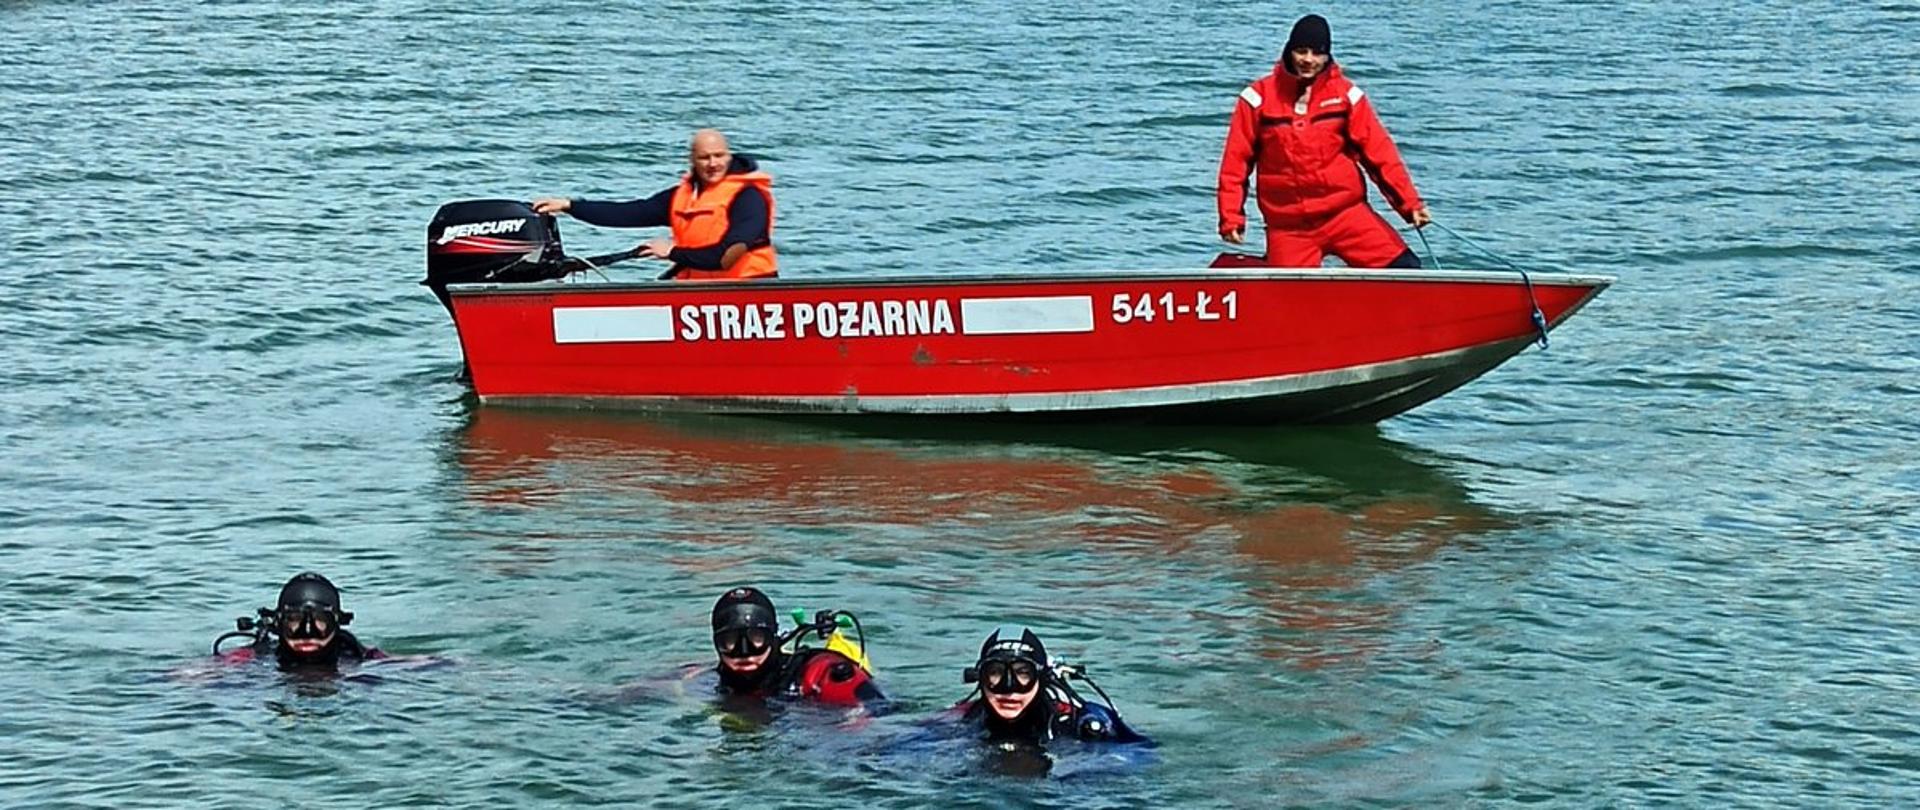 Na pierwszym planie widać trzech nurków w wodzie po nurkowaniu w tle łódź strażacką w jeziorze Solińskim, na której pokładzie znajduje sternik i ratownik wyposażeni w środki ochrony indywidualnej. 